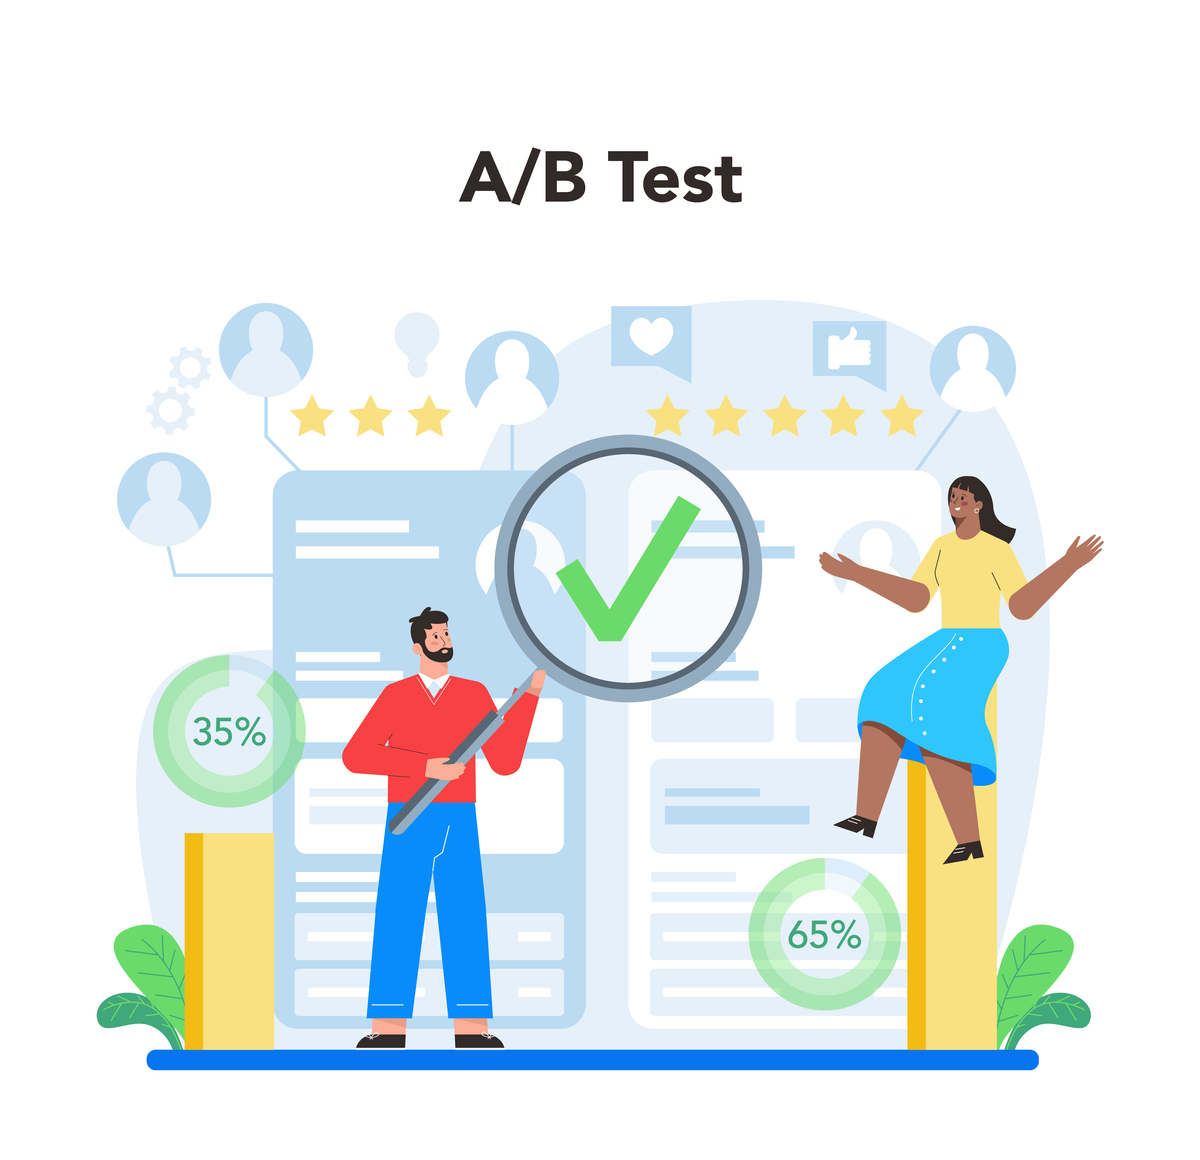 A/B testing in marketing